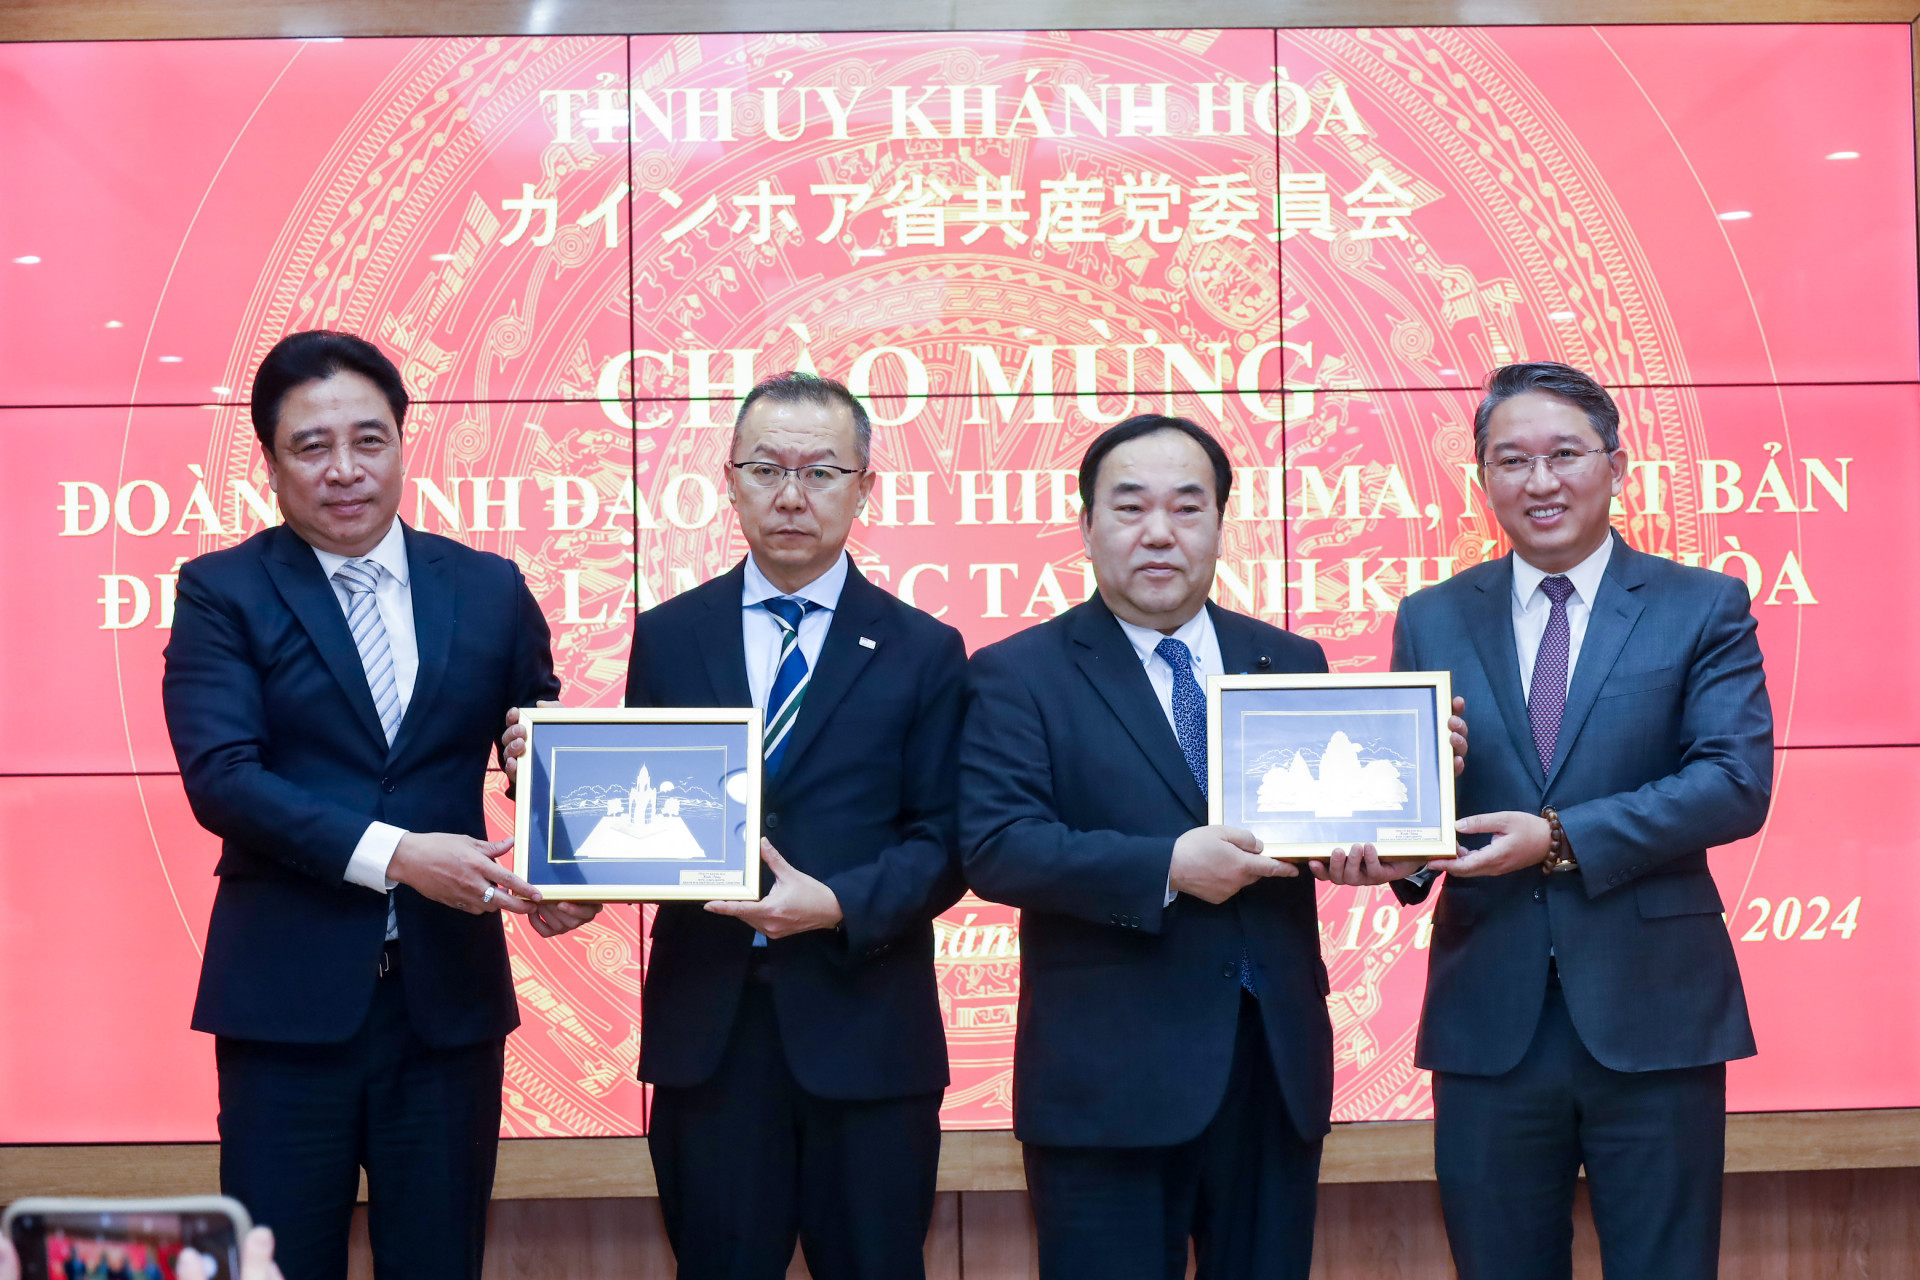 Đồng chí Nguyễn Hải Ninh và đồng chí Nguyễn Khắc Toàn tặng lãnh đạo tỉnh Hiroshima món quà lưu niệm về Nha Trang - Khánh Hòa.